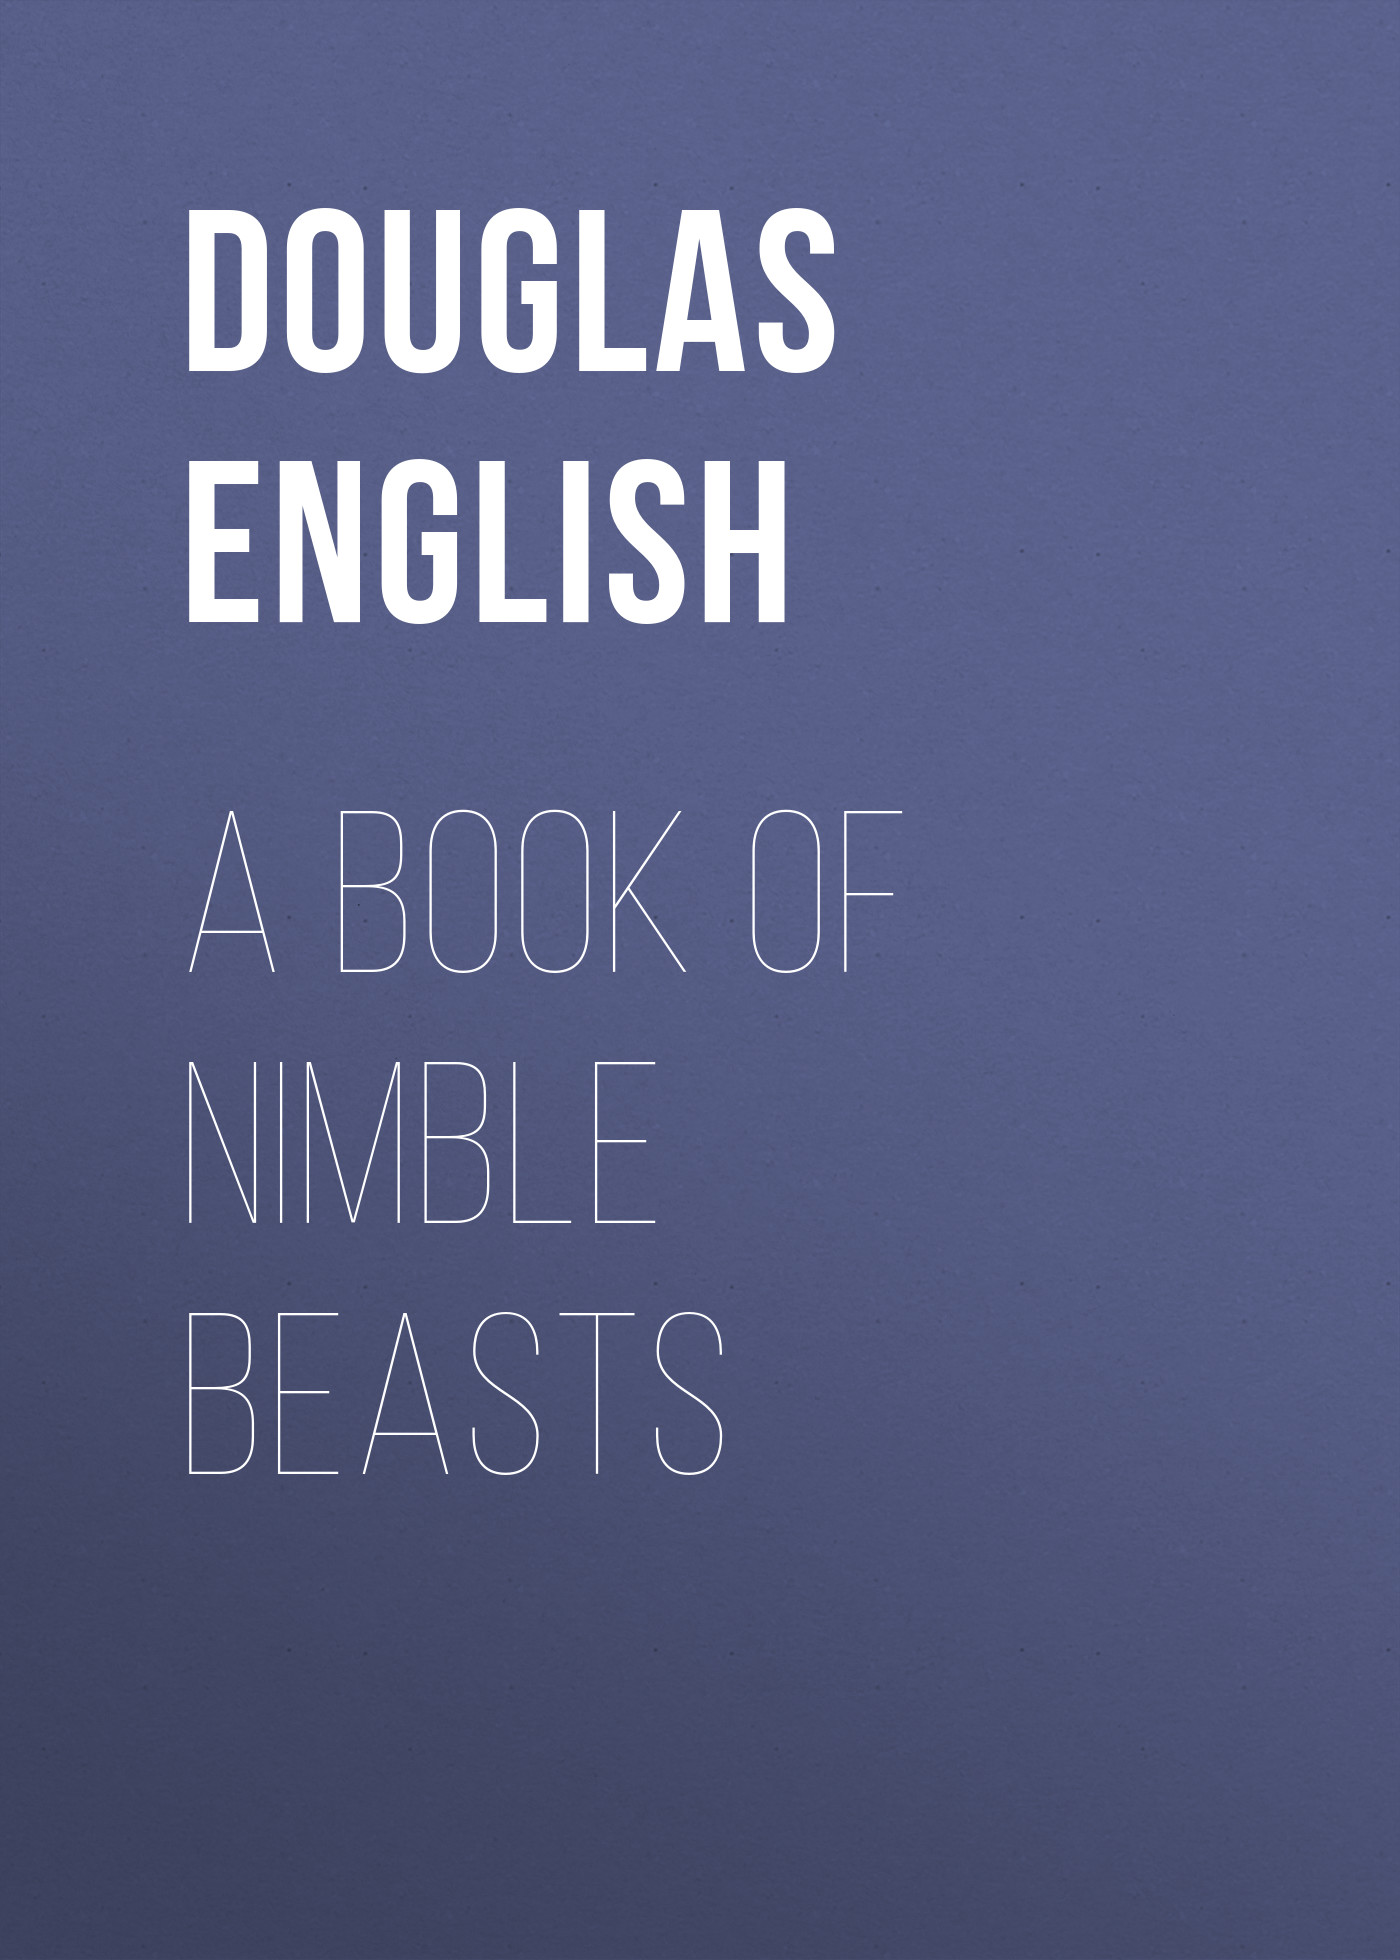 Книга A Book of Nimble Beasts из серии , созданная Douglas English, может относится к жанру Зарубежная классика, Биология, Биология, Зарубежная старинная литература. Стоимость электронной книги A Book of Nimble Beasts с идентификатором 34842886 составляет 0 руб.